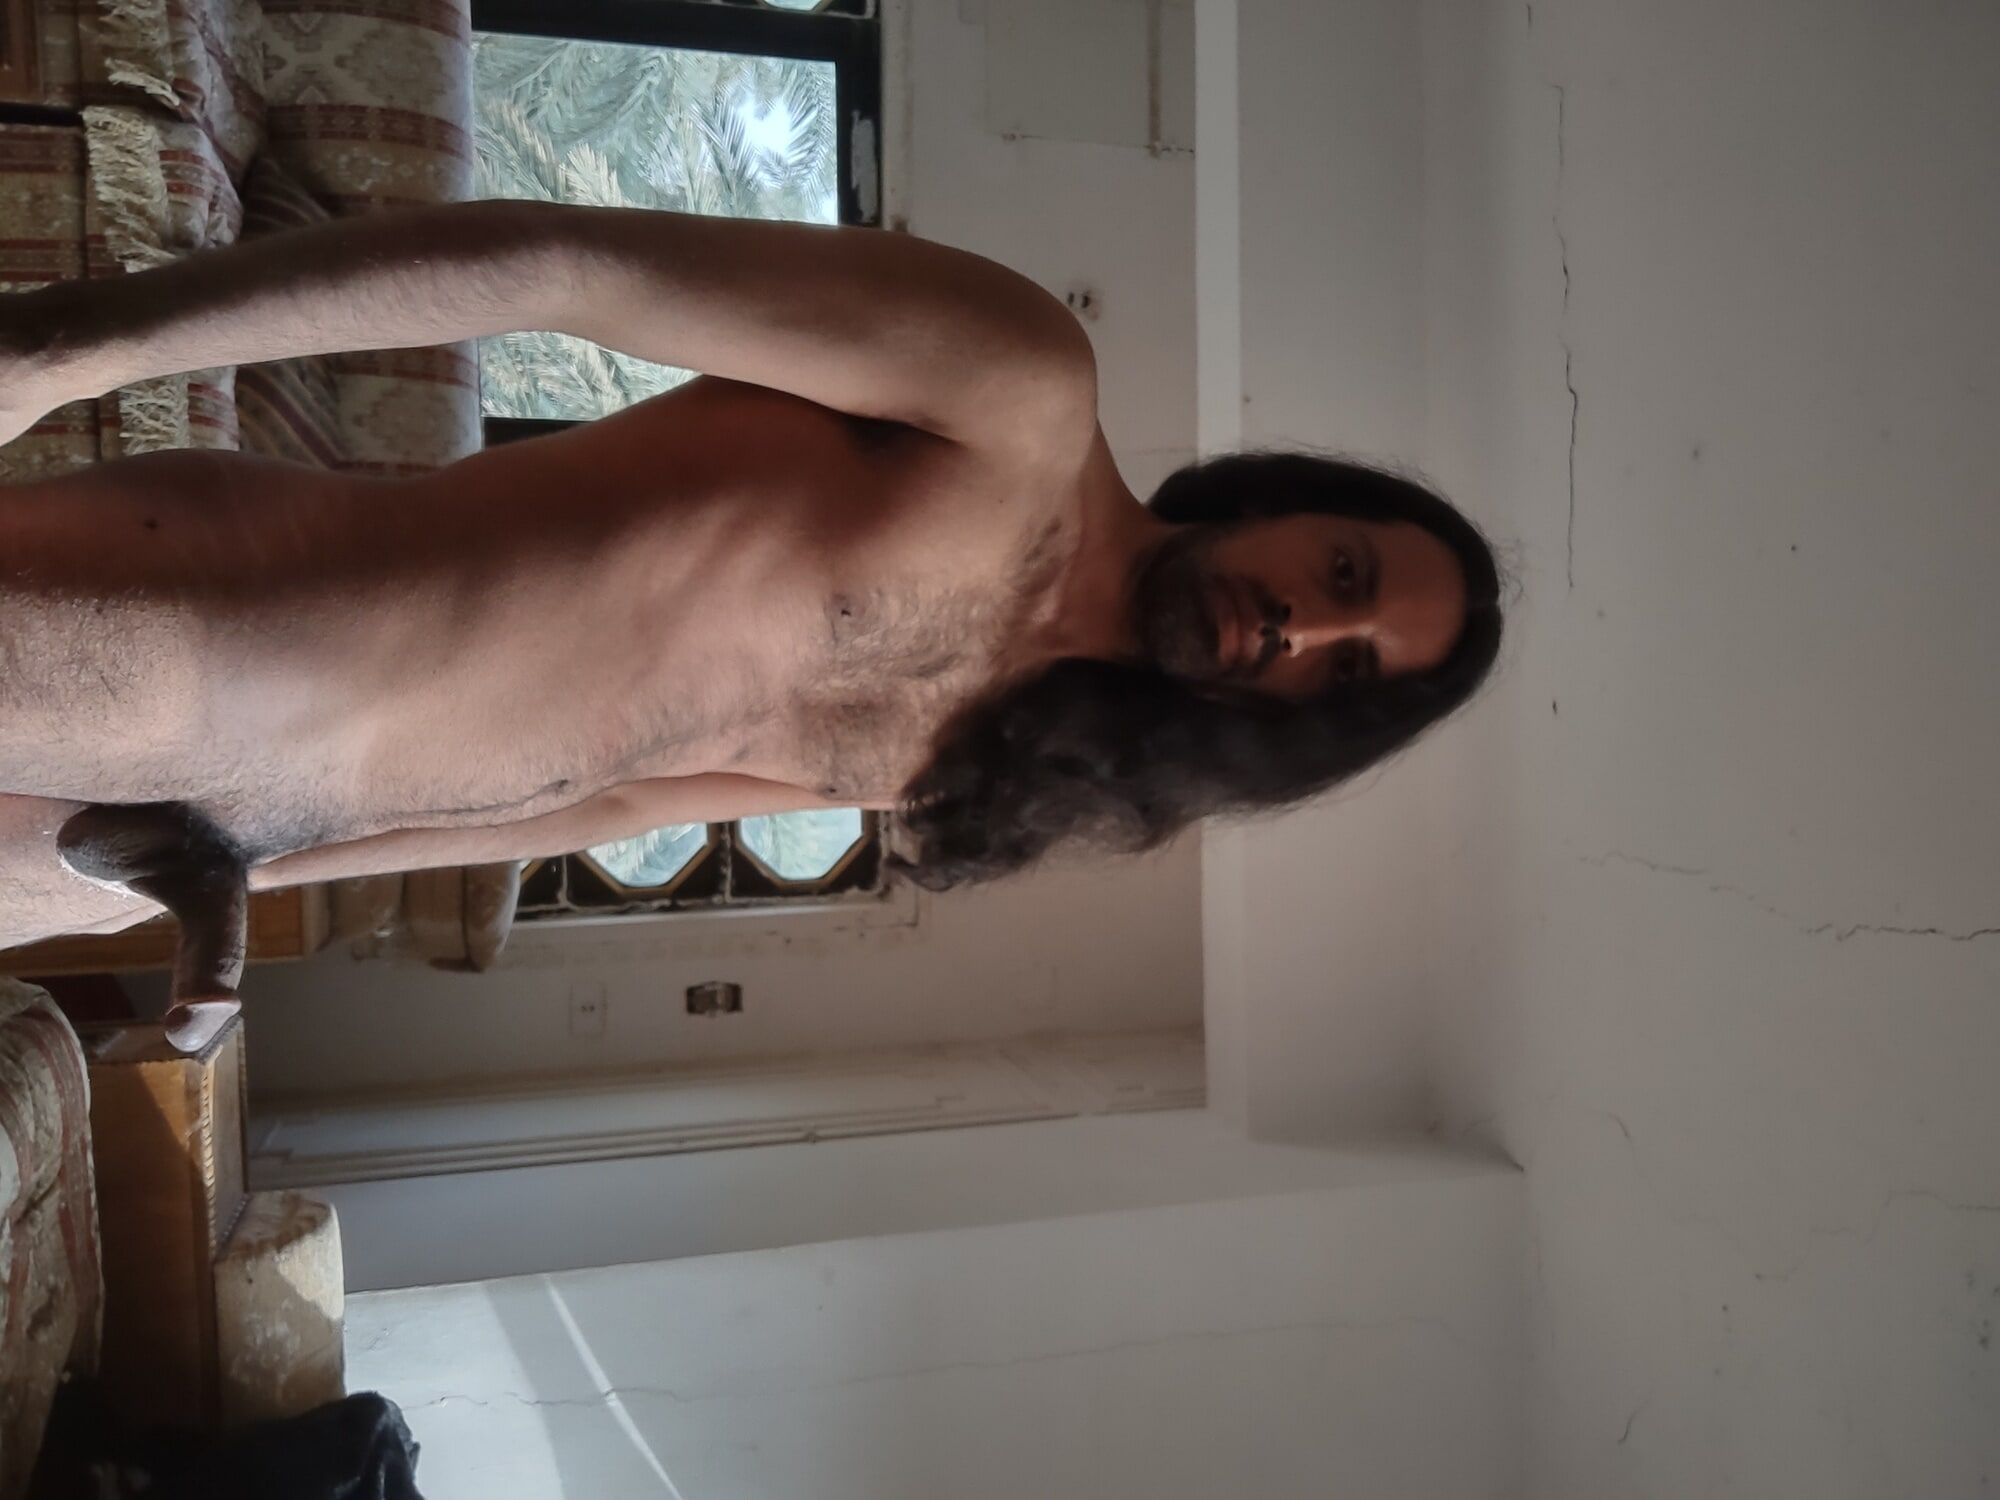 Naked man